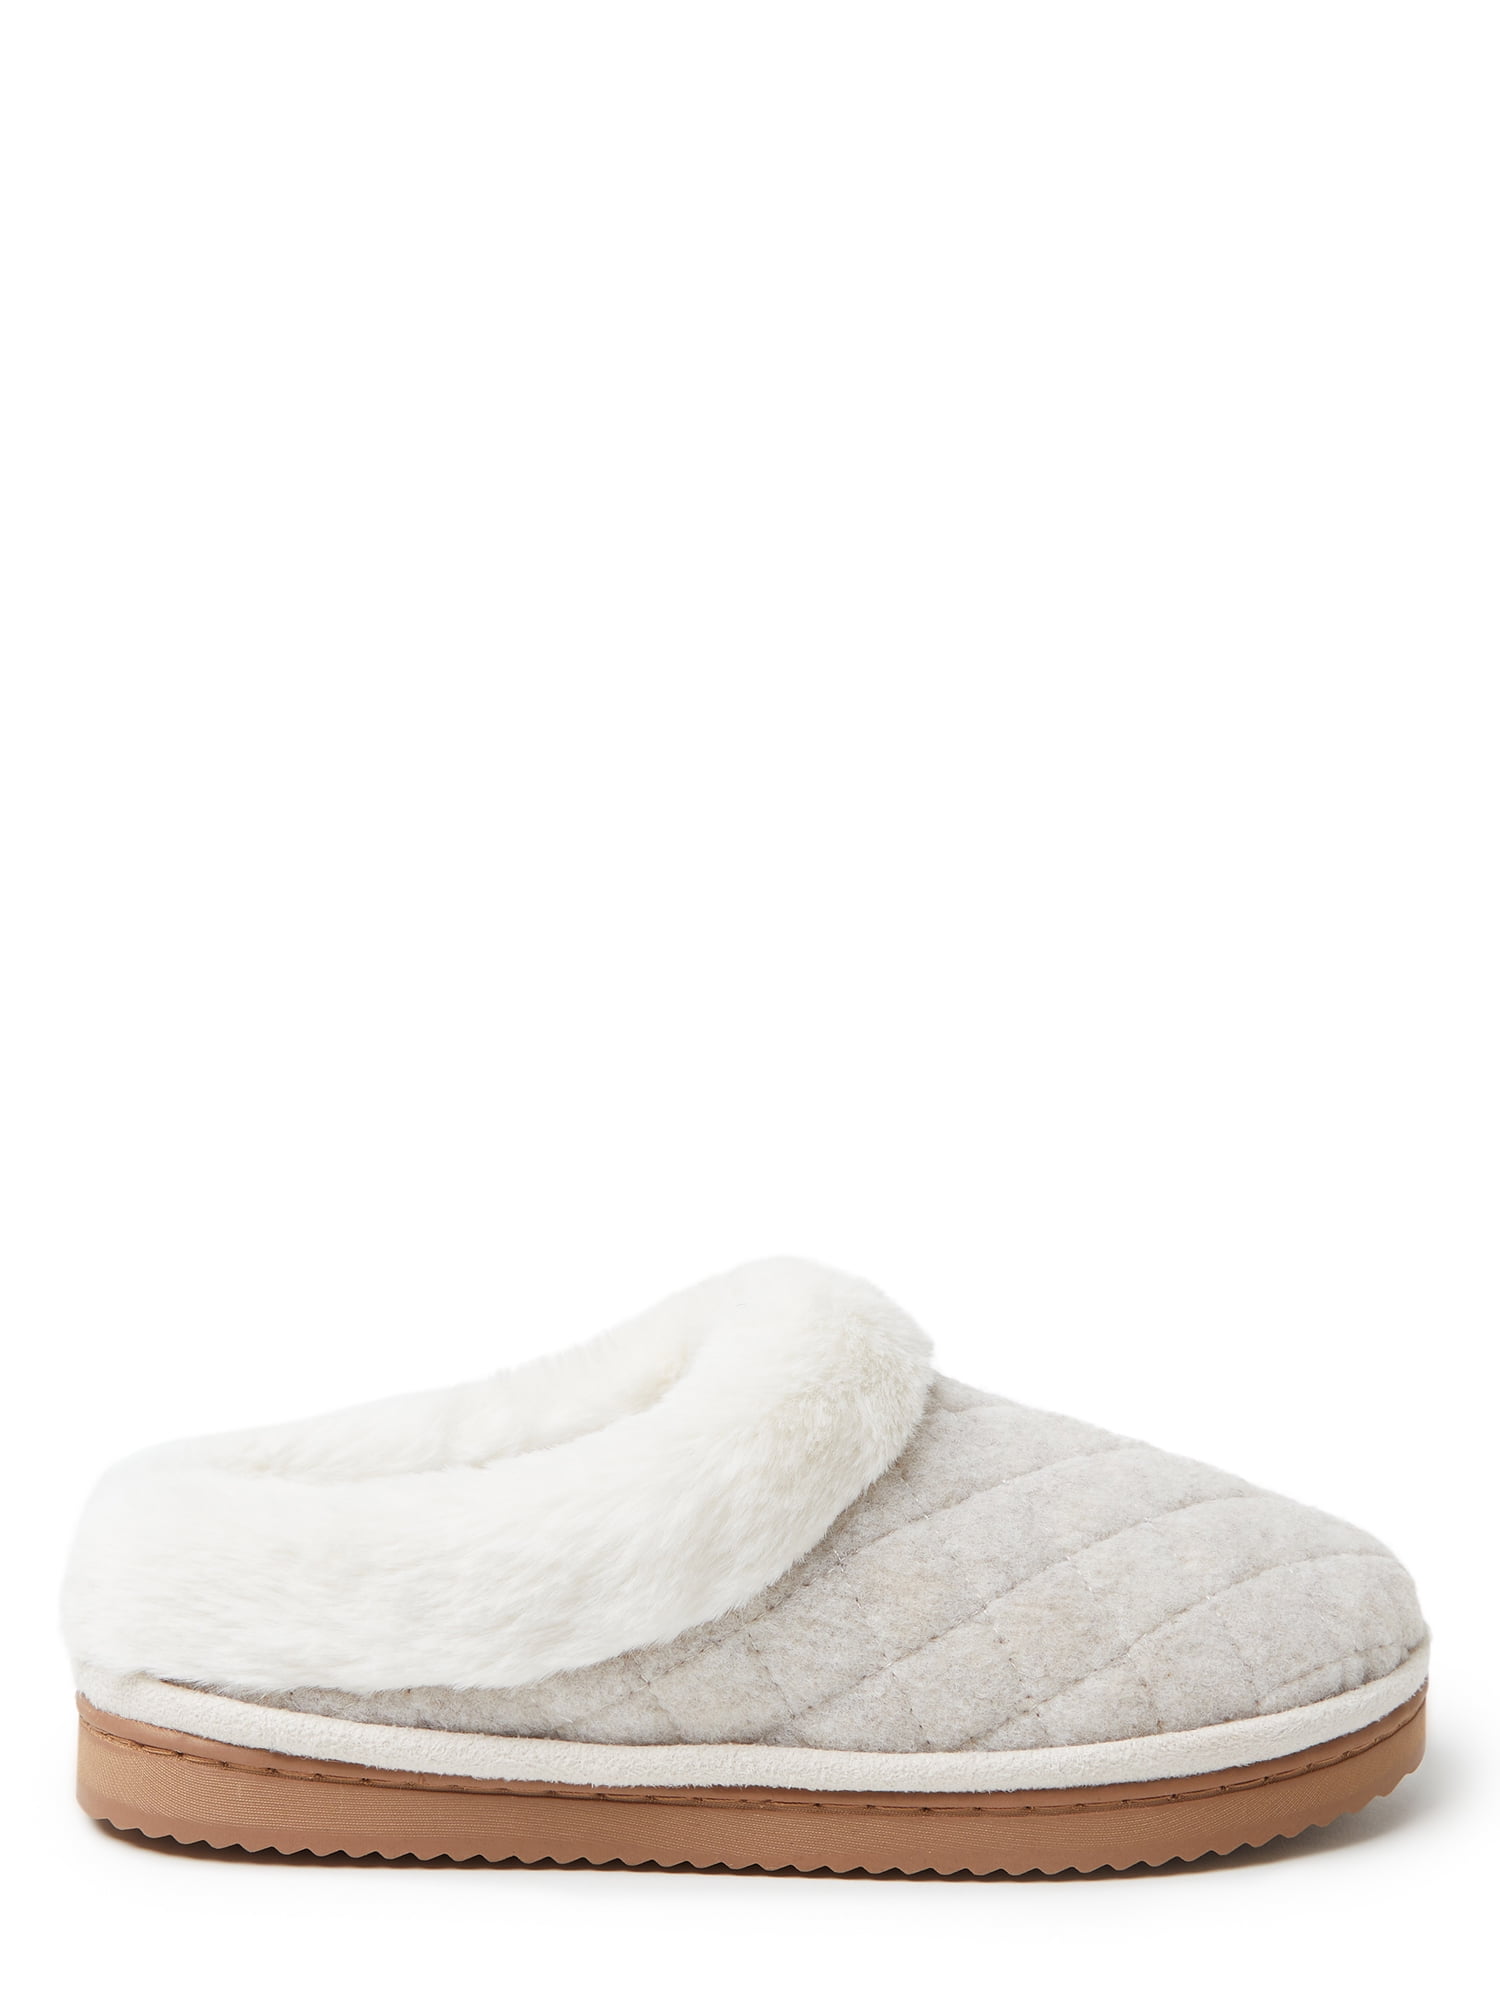 Produkt fætter bandage Dearfoams Cozy Comfort Wool Inspired Scuff Slippers (Women's) - Walmart.com